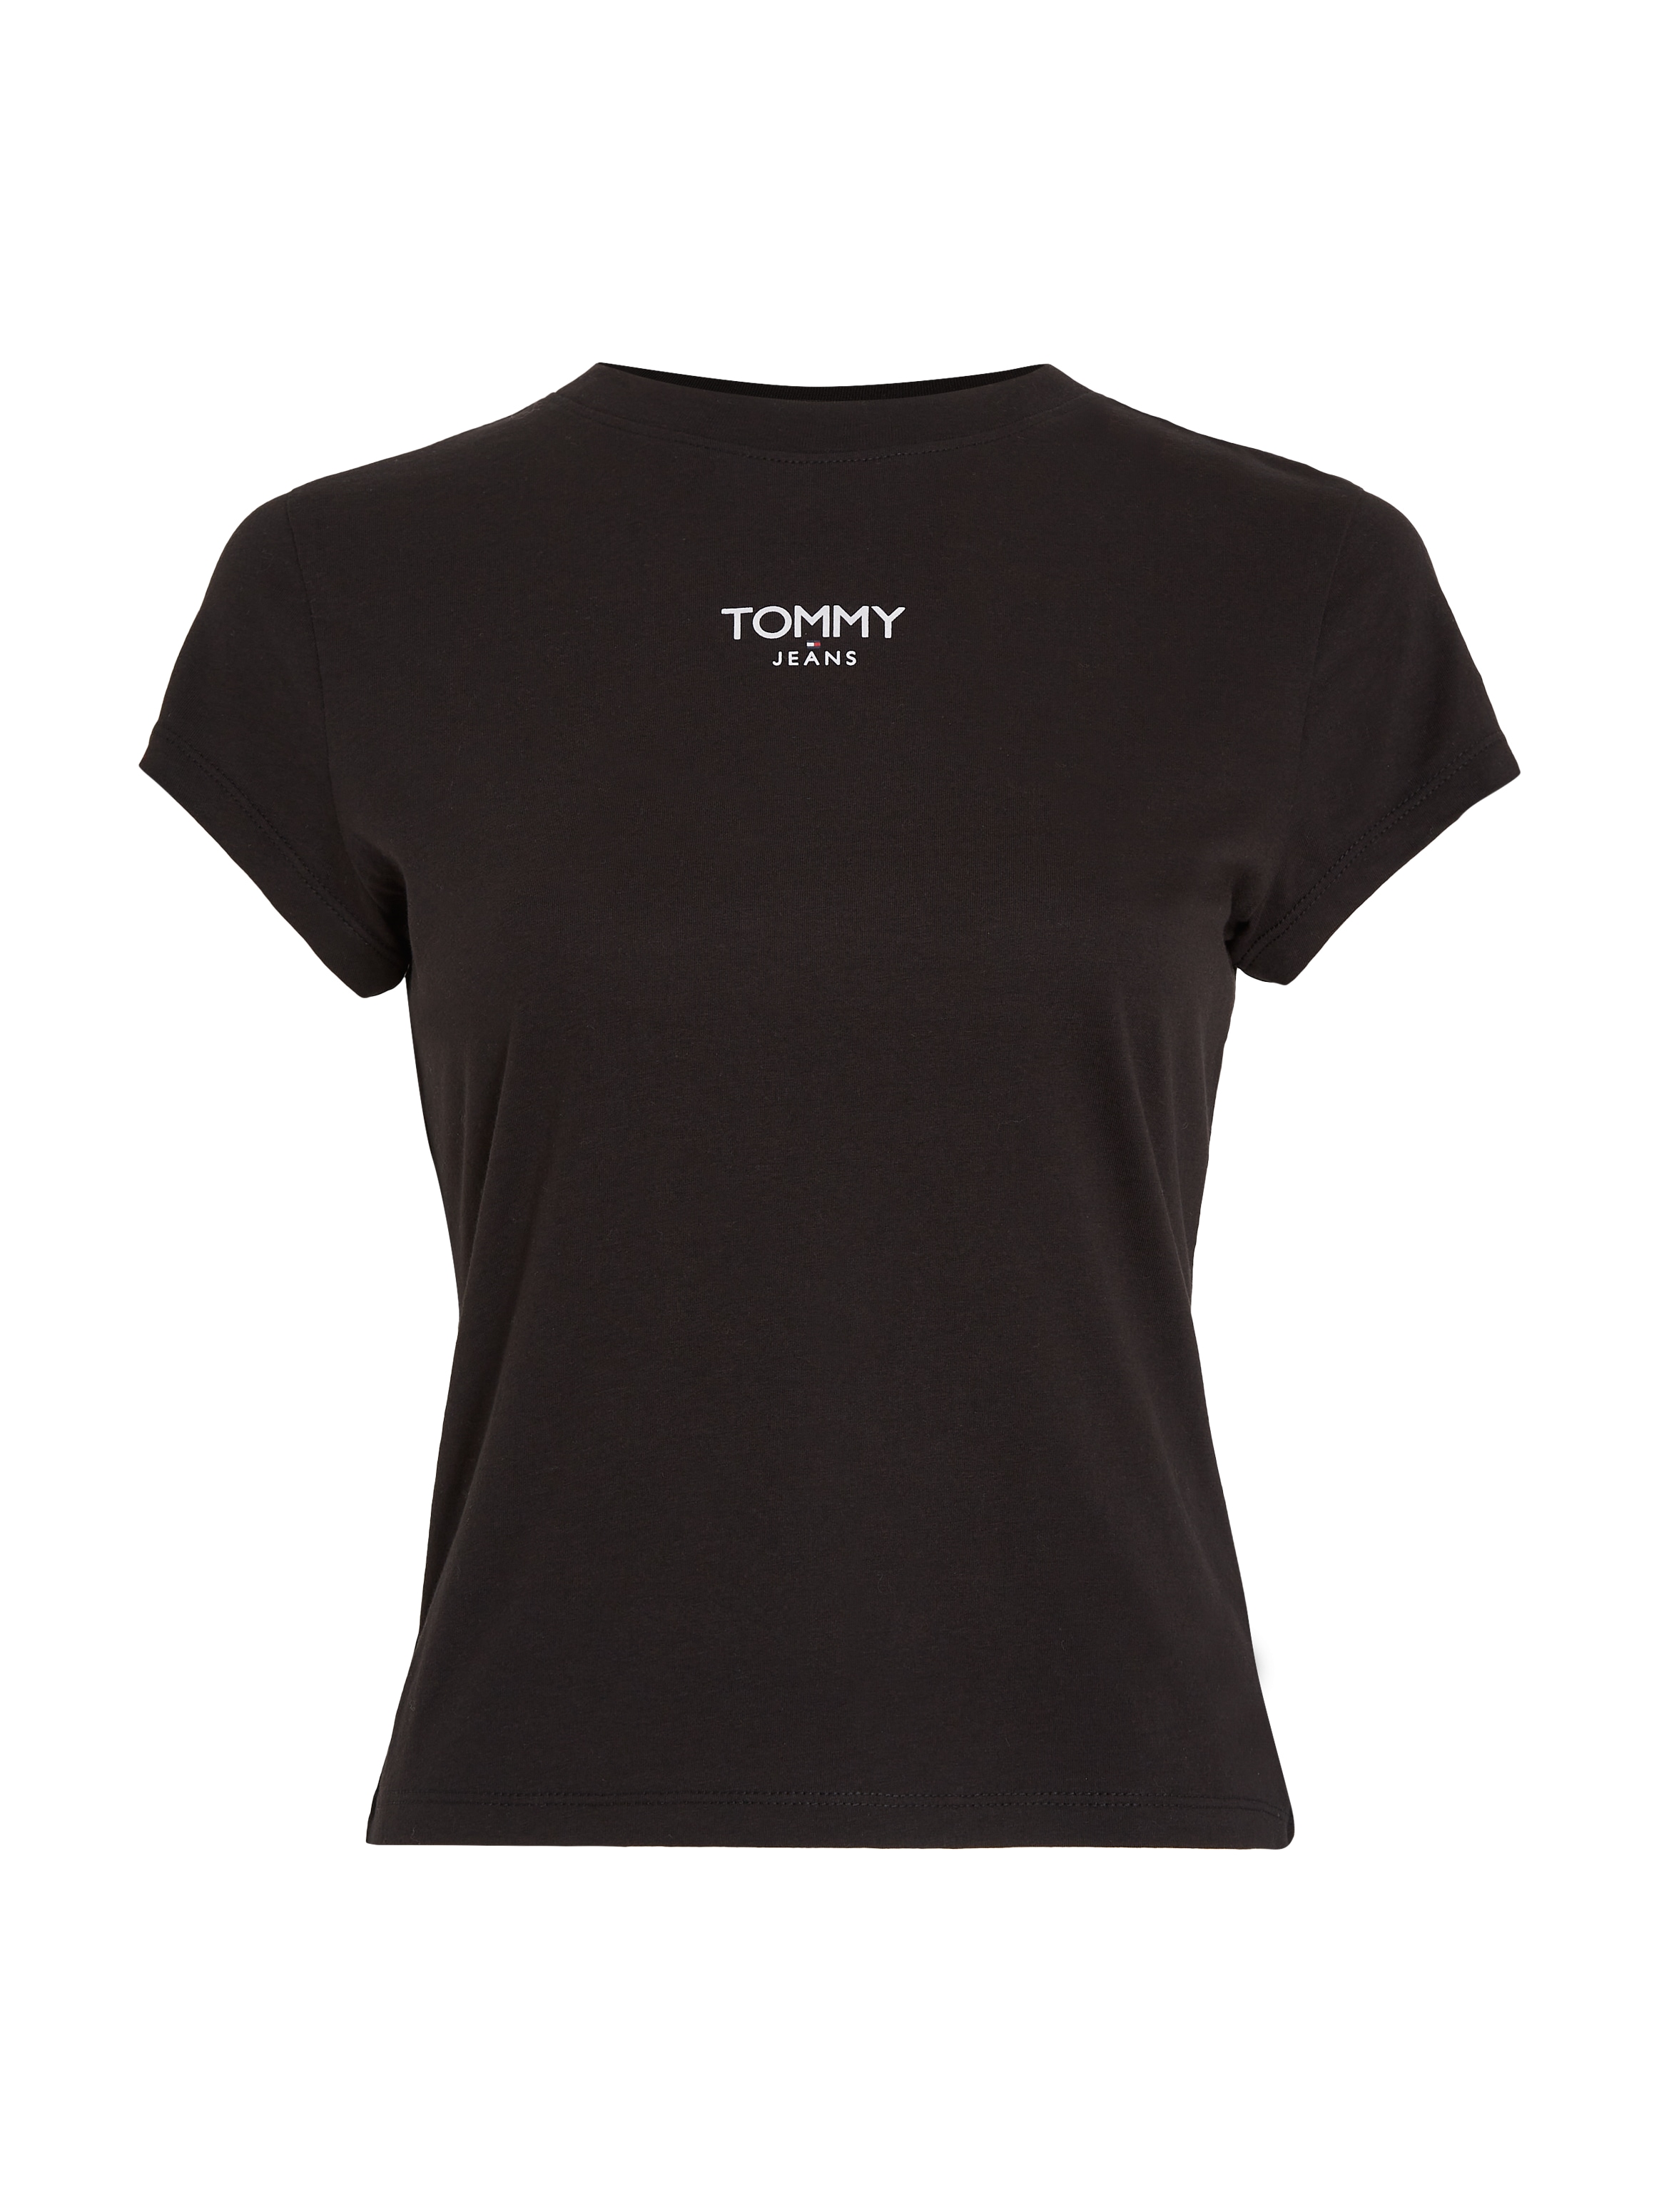 günstigen Preisen erhältlich. Tommy Jeans T-Shirt mit Tommy LOGO BBY 1 SS«, Logo ESSENTIAL Jeans ♕ »TJW bei